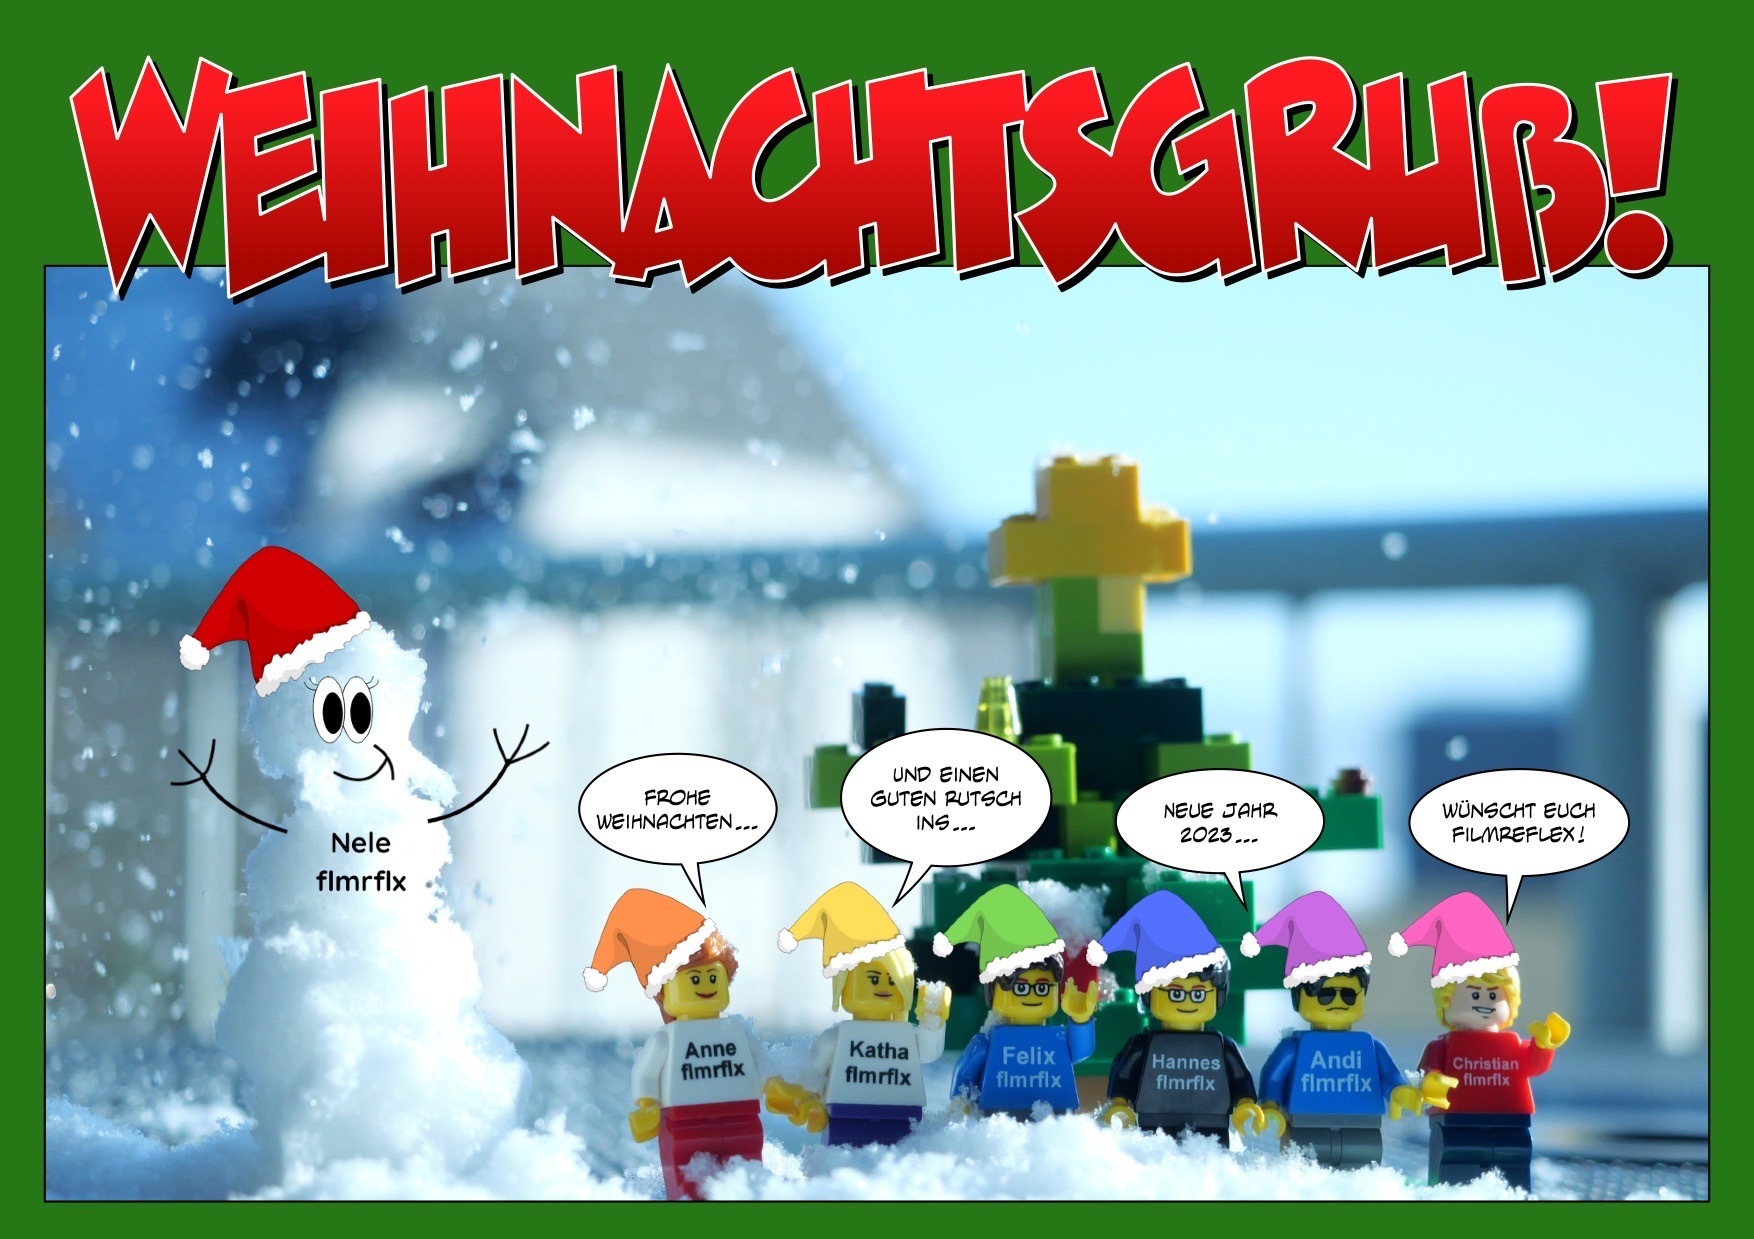 Gruß zu Weihnachten: Foto mit kleinem Schneemännchen und dem filmreflex-Team als Lego-Figuren, im Hintergrund ein Lego-Weihnachtsbaum